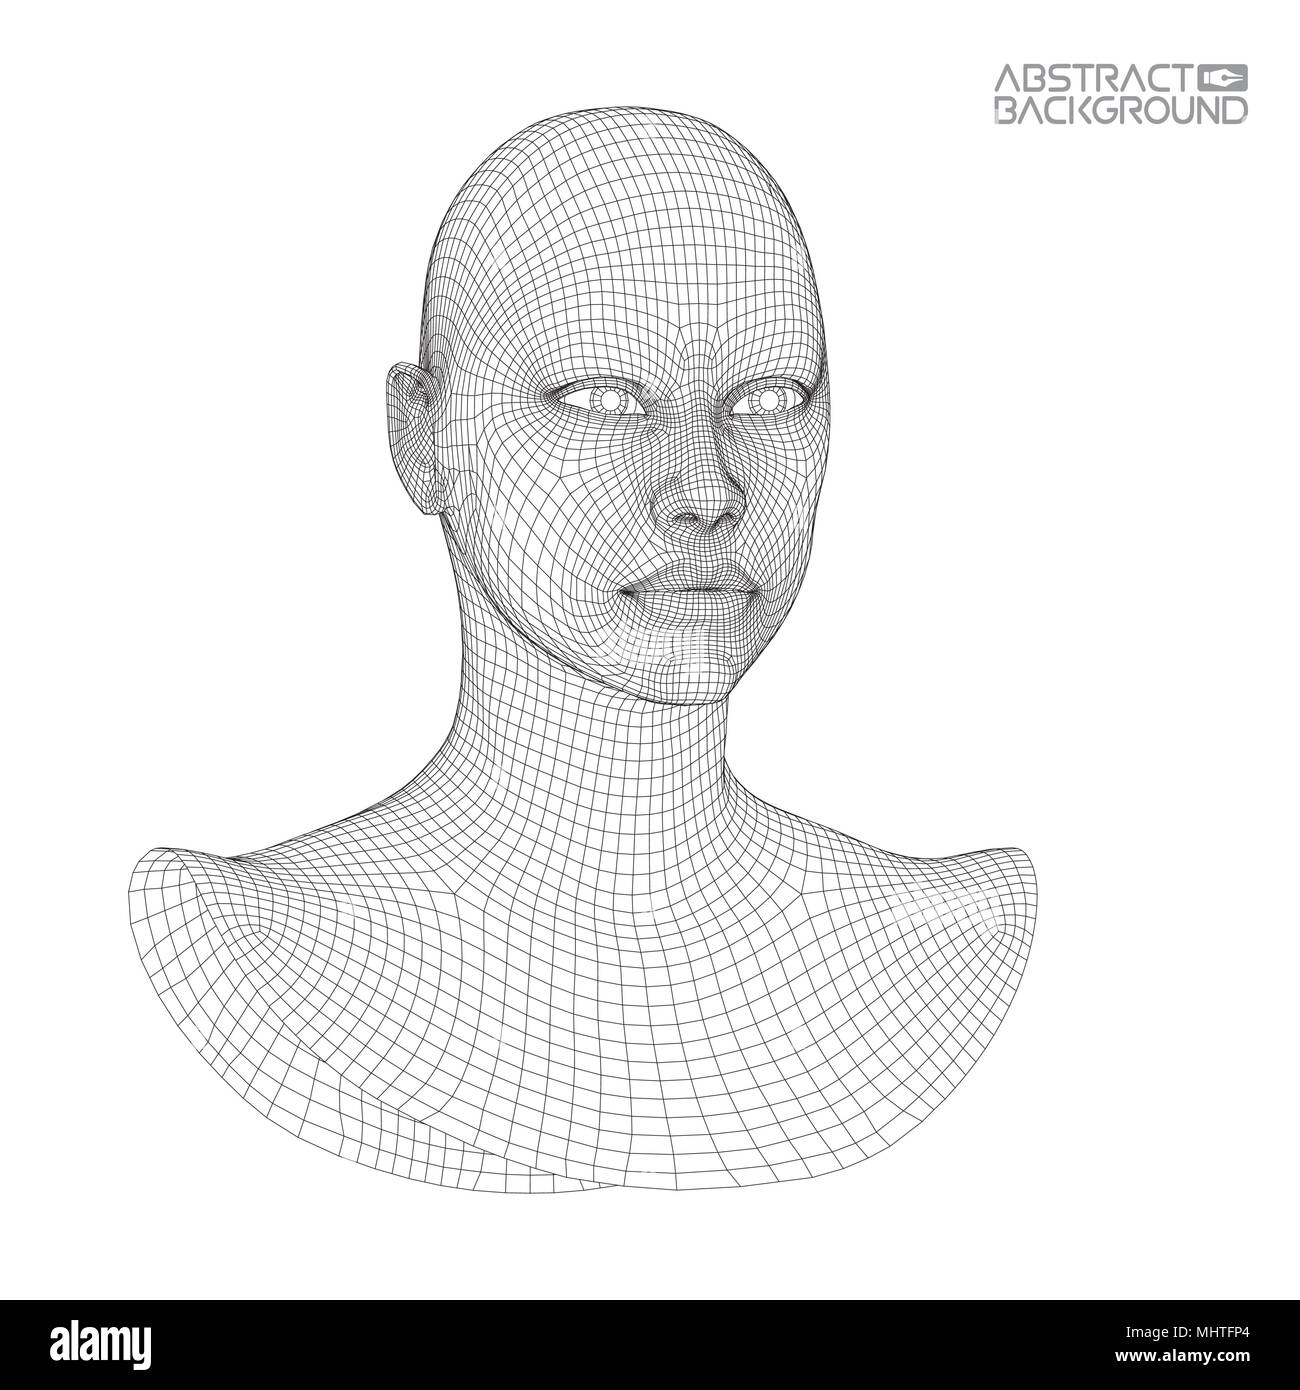 Ai digitale Gehirn. Künstliche Intelligenz Konzept. Menschlichen Kopf in Roboter digitalen Computer Interpretation. Drahtmodell Kopf Konzept. Stock Vektor